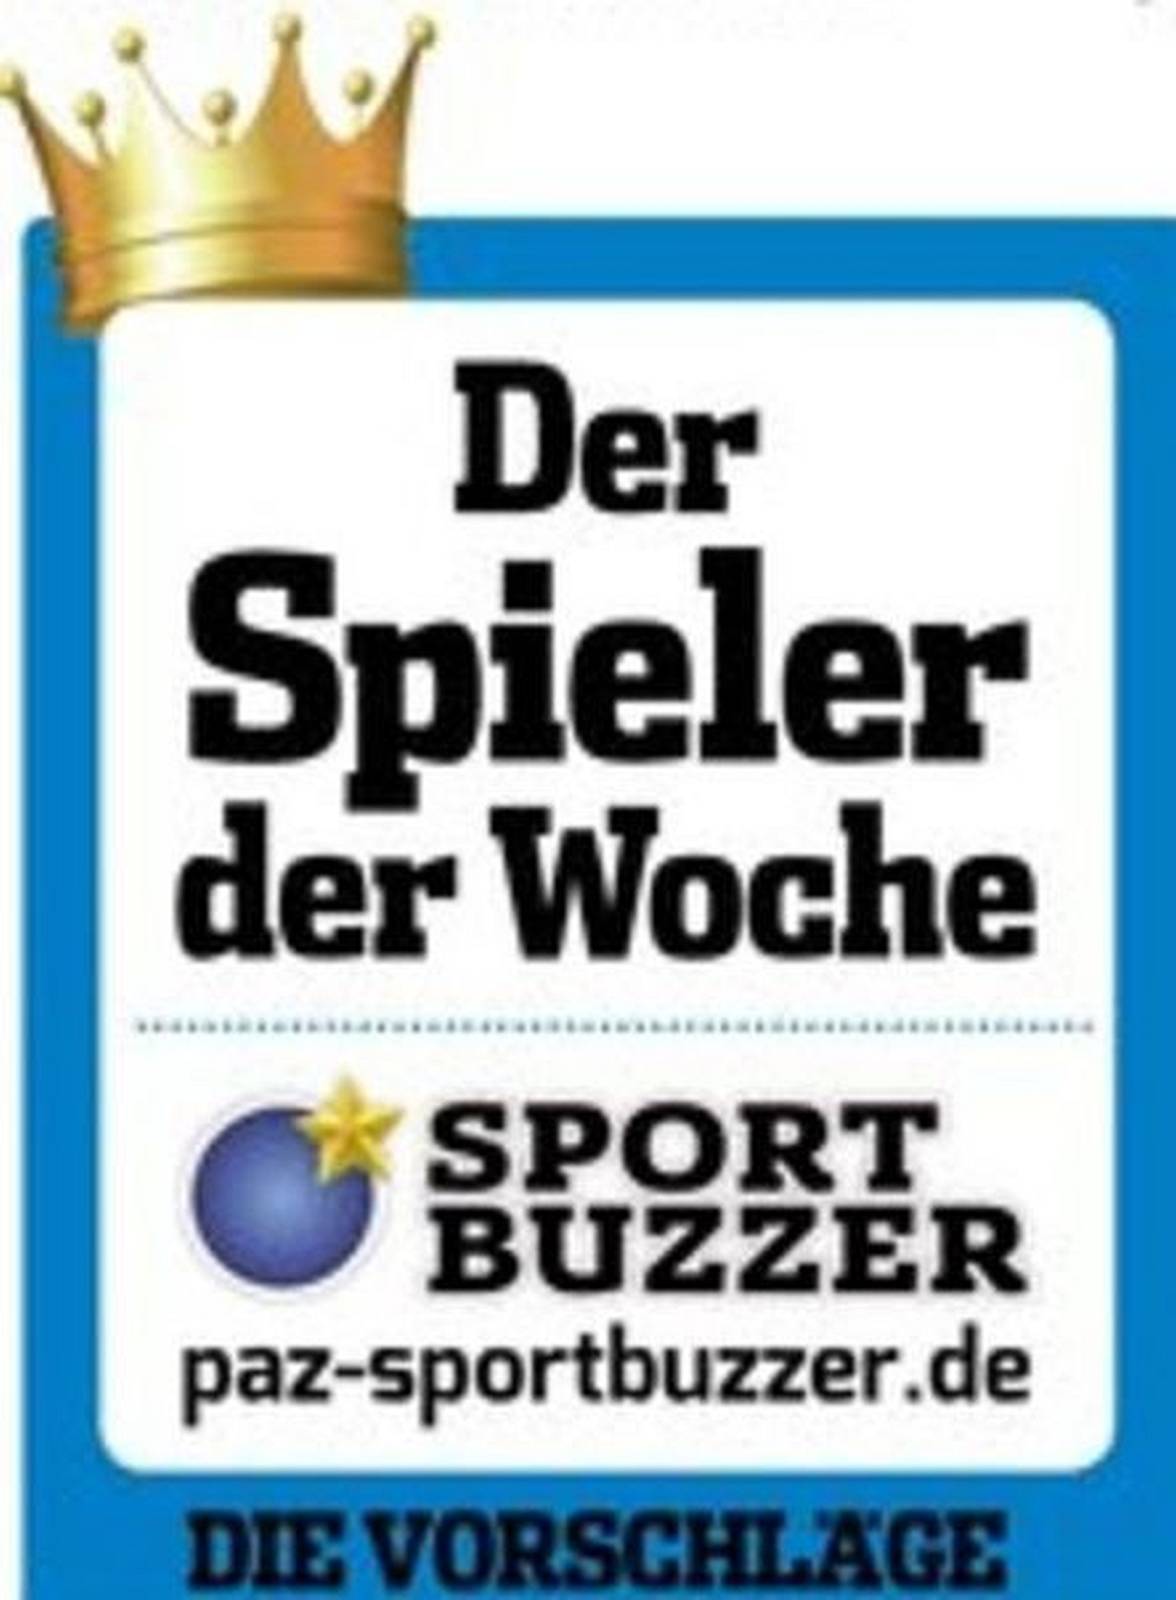  © http://peine.sportbuzzer.de/1-kreisklasse-peine/artikel/gut-getroffen-sieben-auf-einen-streich/30261/19